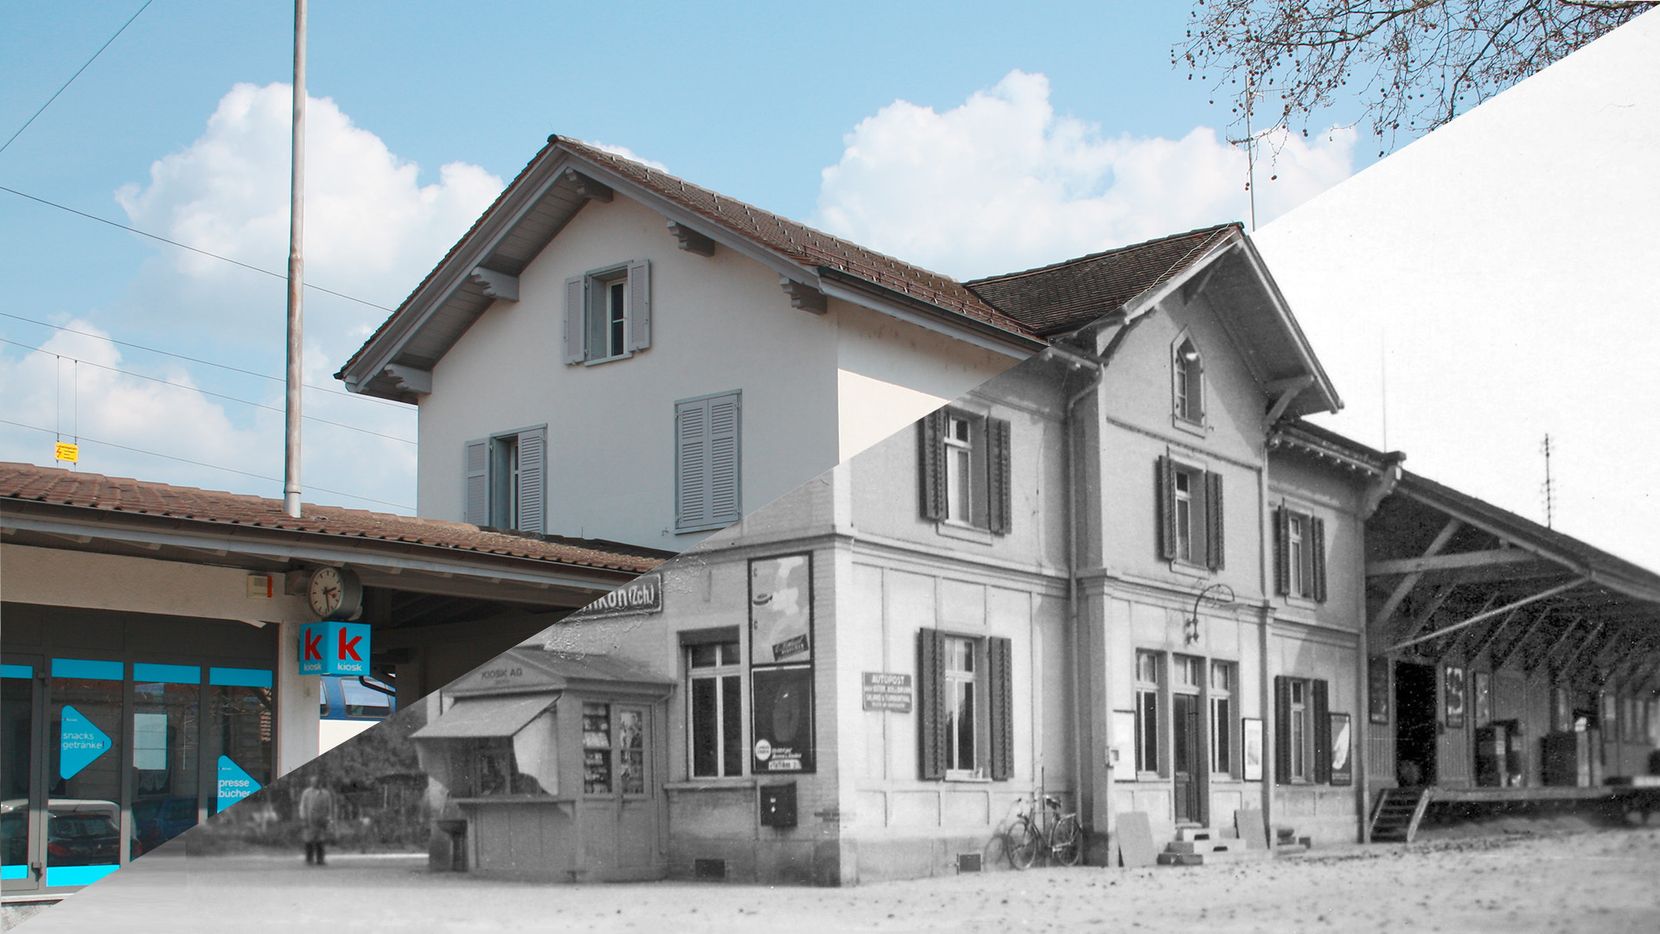 Bahnhof Pfäffikon früher und heute.